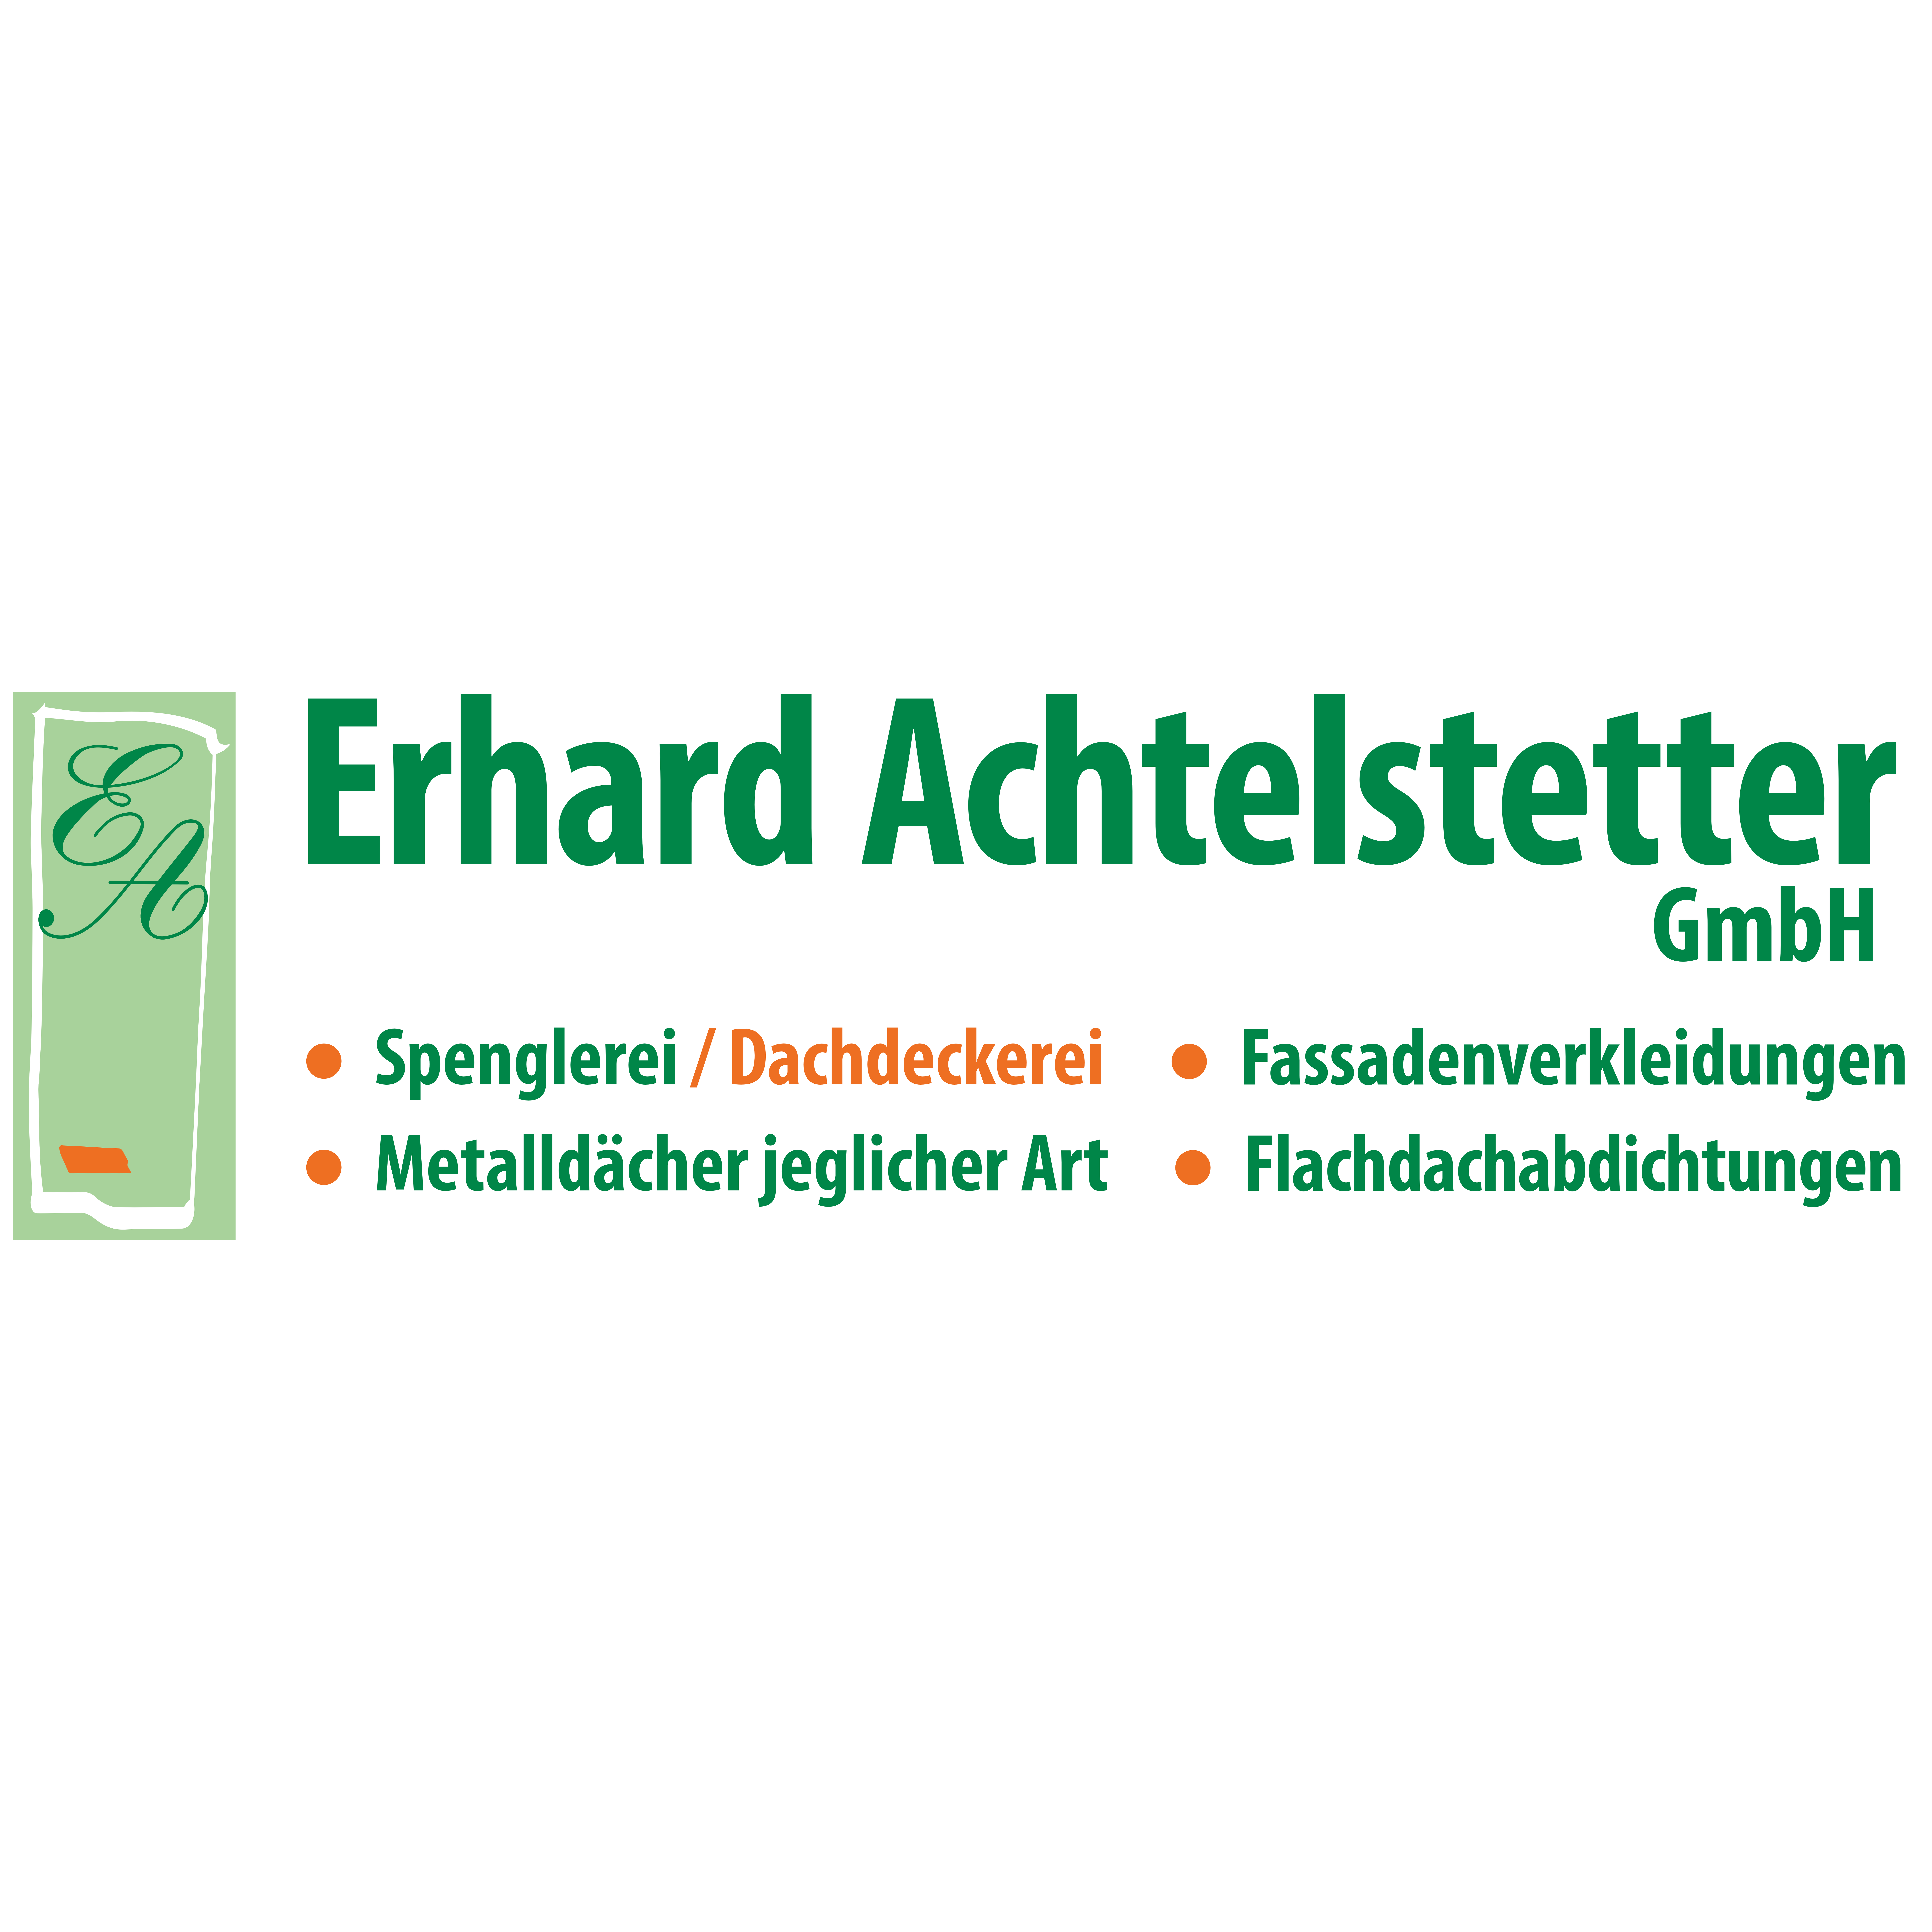 Erhard Achtelstetter GmbH in Dietersheim - Logo